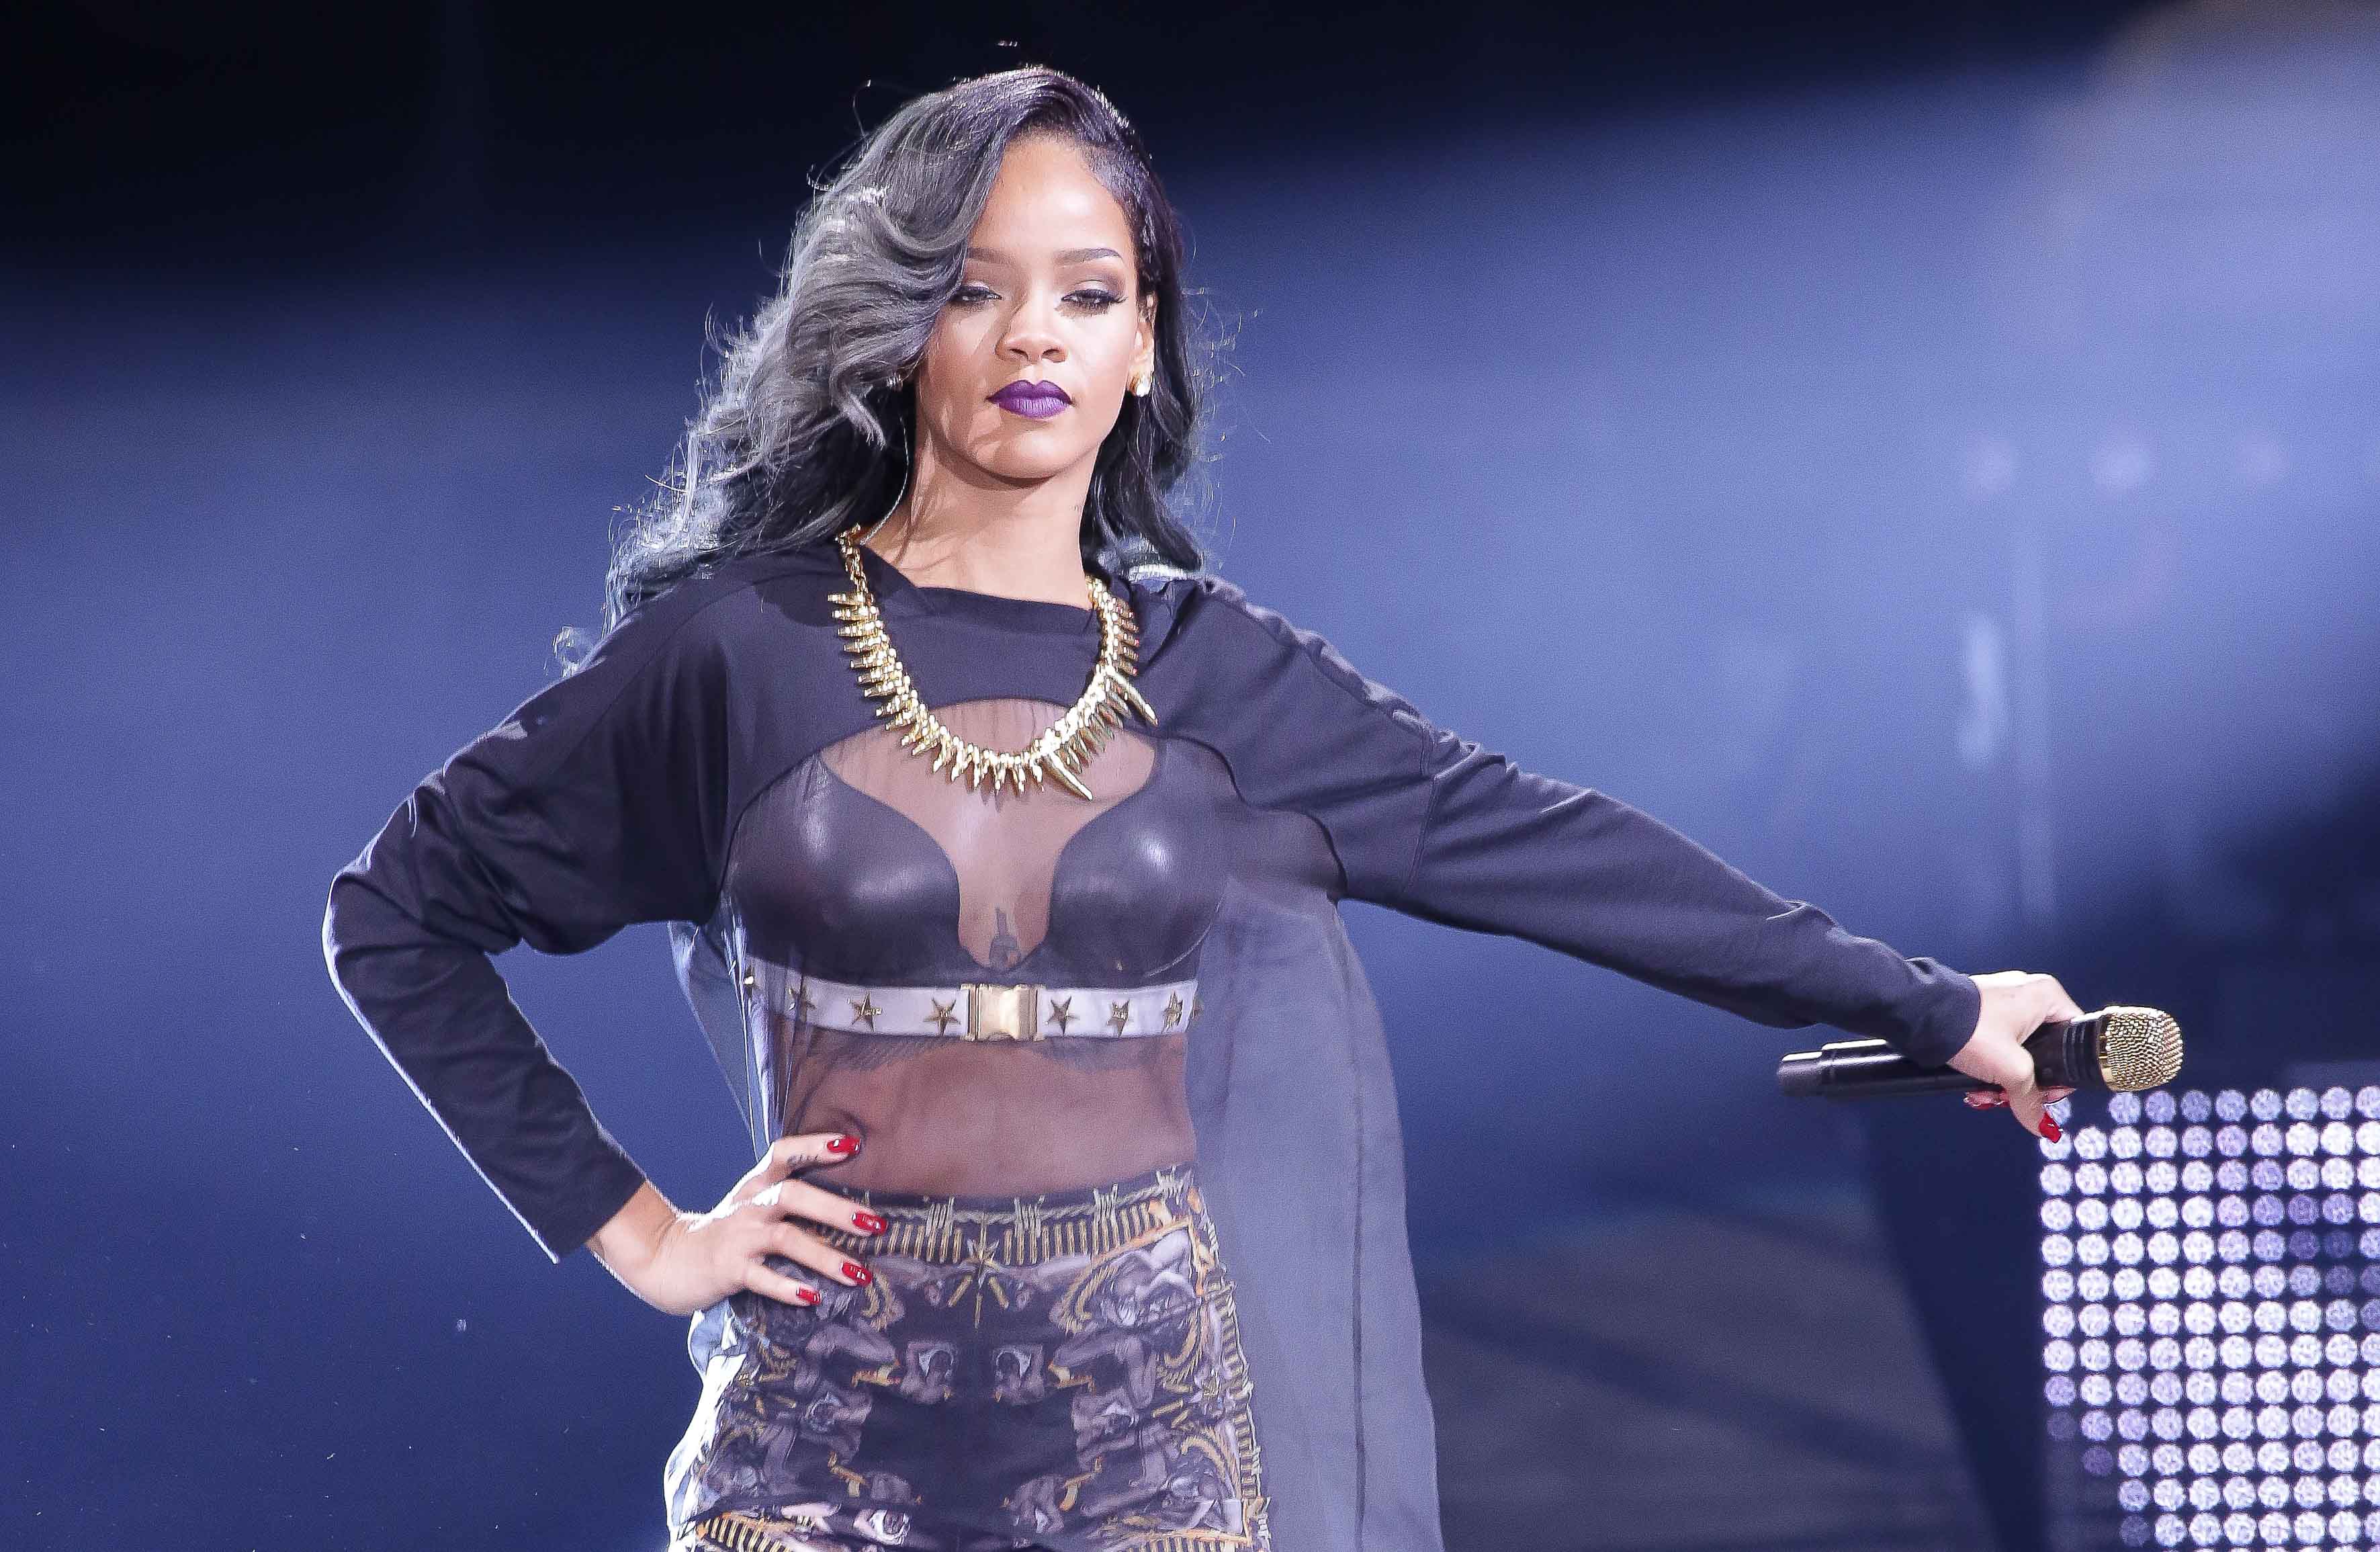  Rihanna est venue le 20 juillet 2013 inaugurer l’Arena du Stade Pierre-Mauroy à l’occasion de sa tournée mondiale « Diamonds World Tour ». Première star internationale à se produire dans l’enceinte du stade, elle a interprété ses plus grands tubes, notamment « Stay », « Diamonds » ou encore « Umbrella ». Rihanna, émue par le public lillois très enthousiaste, verse quelques larmes à la fin du spectacle. 